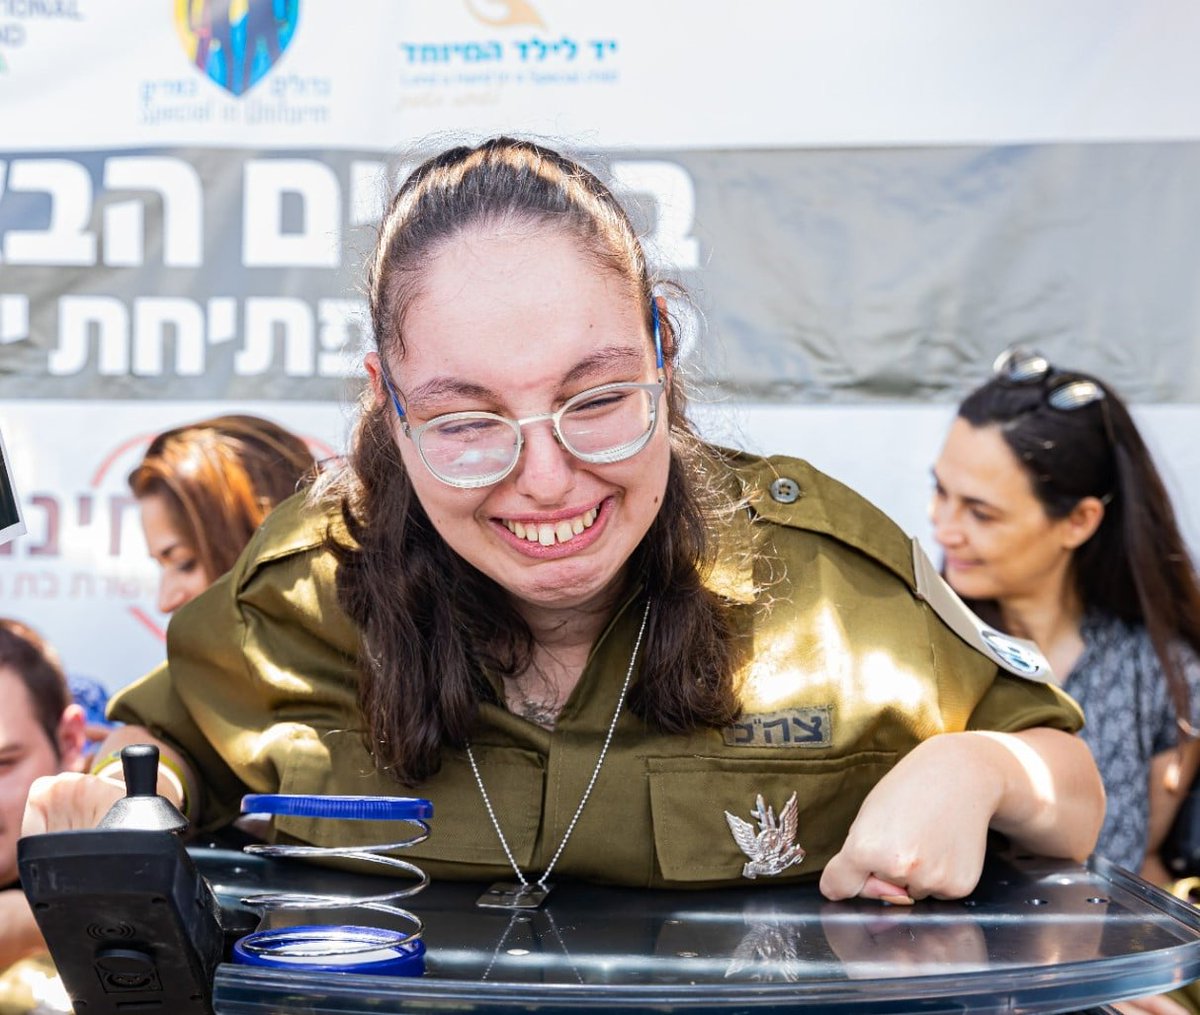 الصورة لفتاة من ذوي الاحتياجات الخاصة تبكي فرحًا بانضمامها لجيش الدفاع الإسرائيلي.
اليوم هو اليوم…